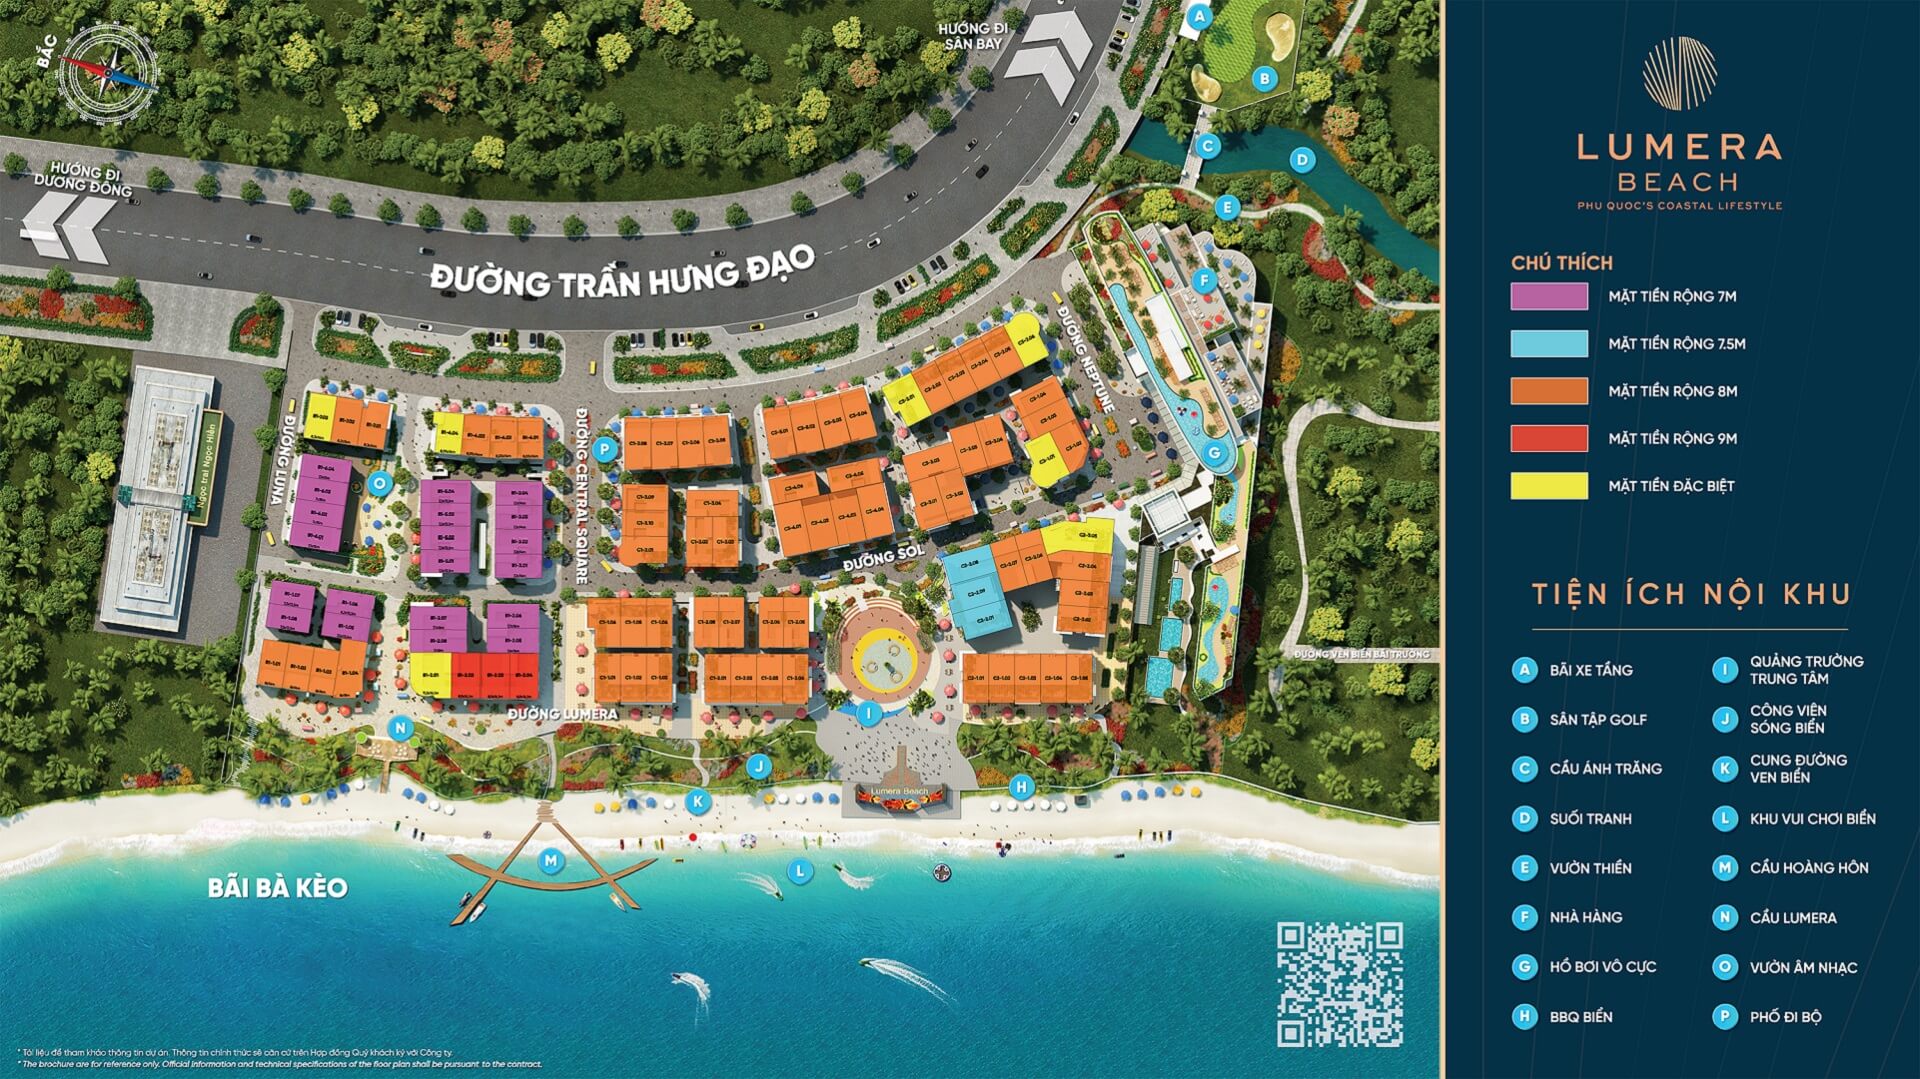 Mặt bằng tổng thể dự án Lumera Beach Phú Quốc